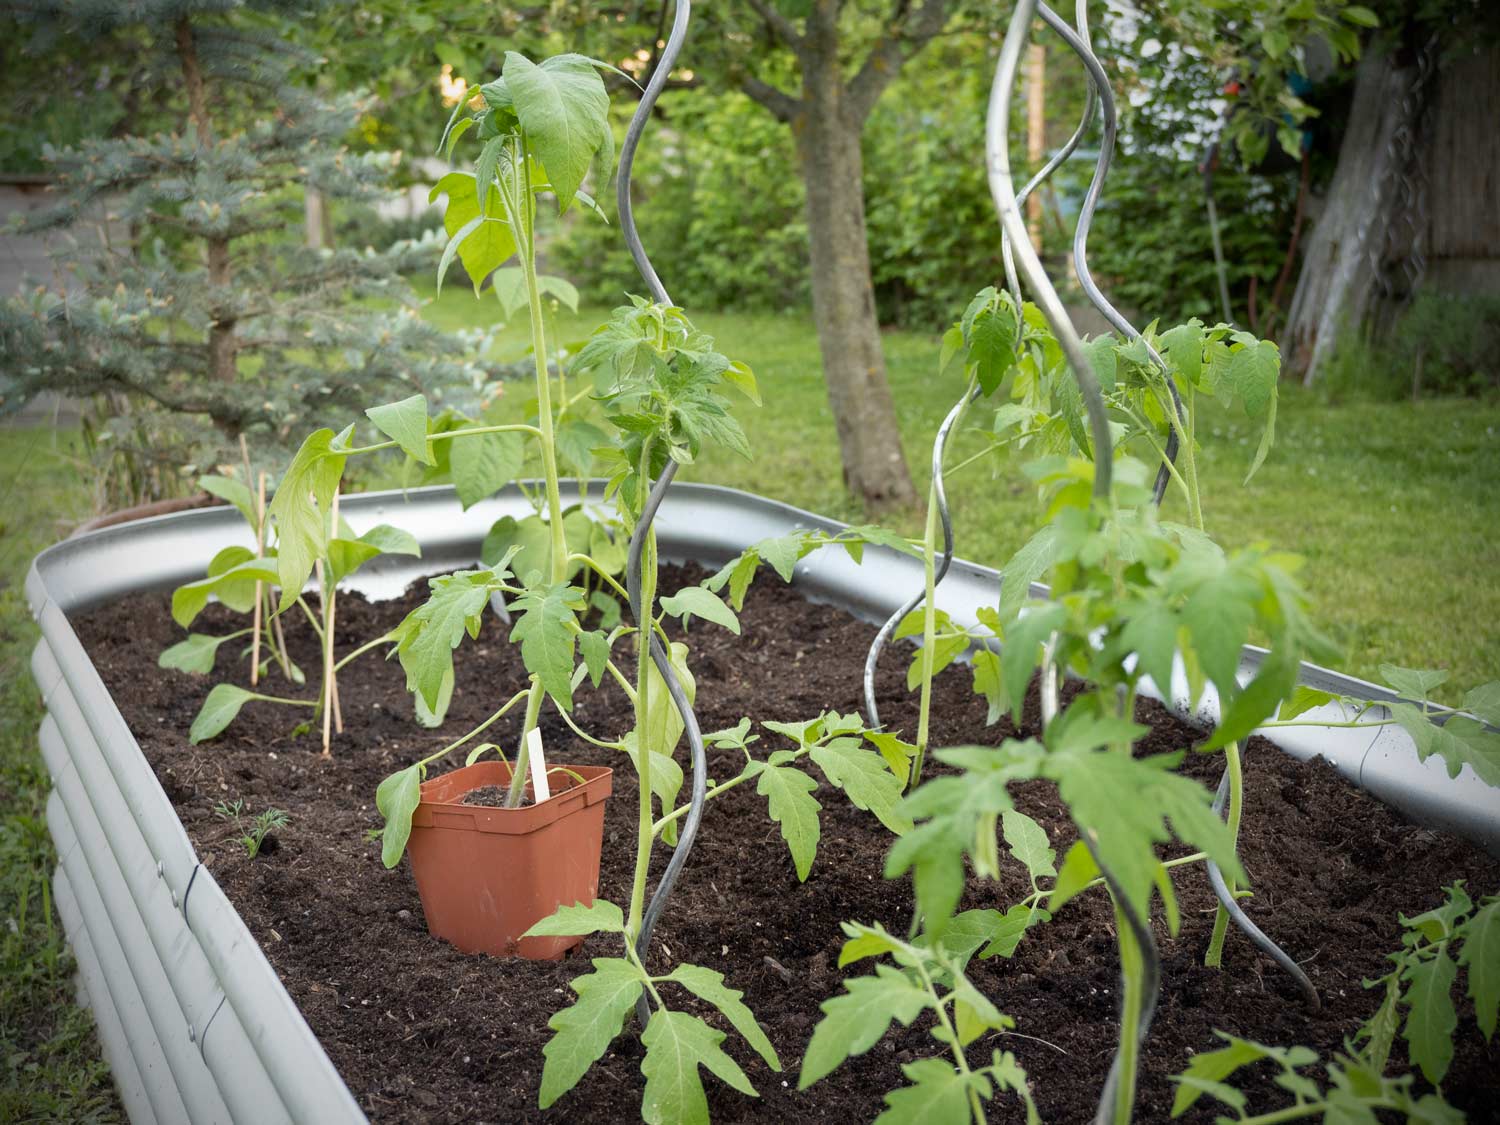 Paradeiser (Tomaten) werden ausgepflanzt